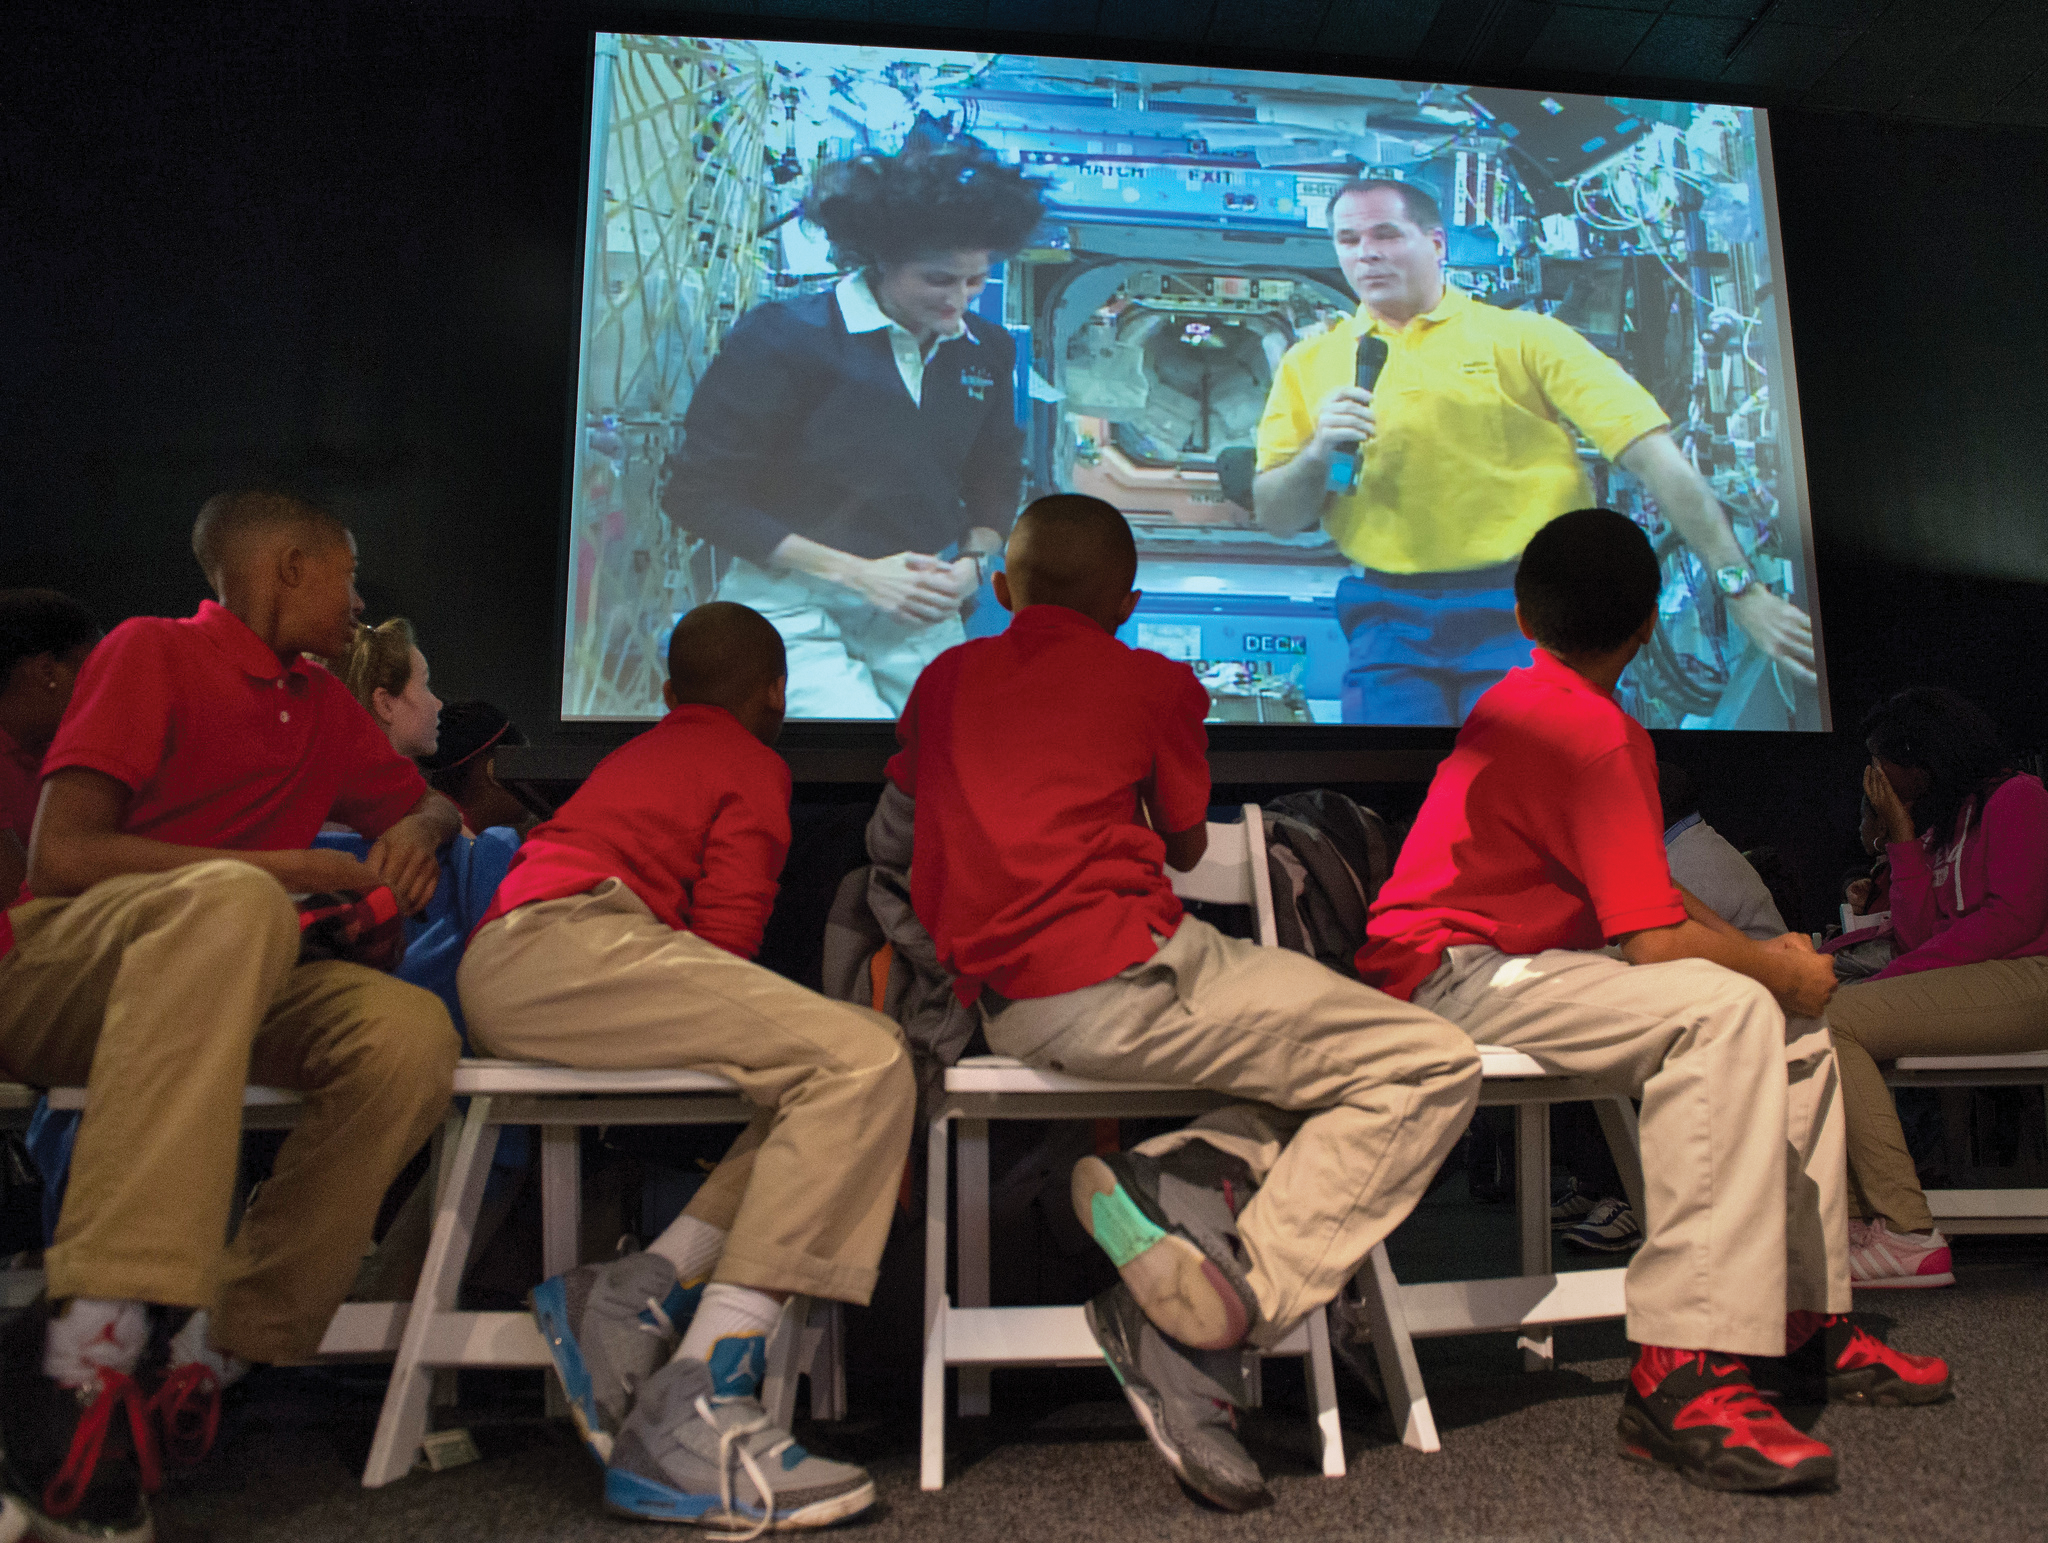 Quatre étudiants se recroquevillent sur des chaises pour regarder un écran derrière eux.  Sur l'écran, deux astronautes flottent côte à côte sur la Station spatiale internationale.  L'astronaute de droite tient un microphone